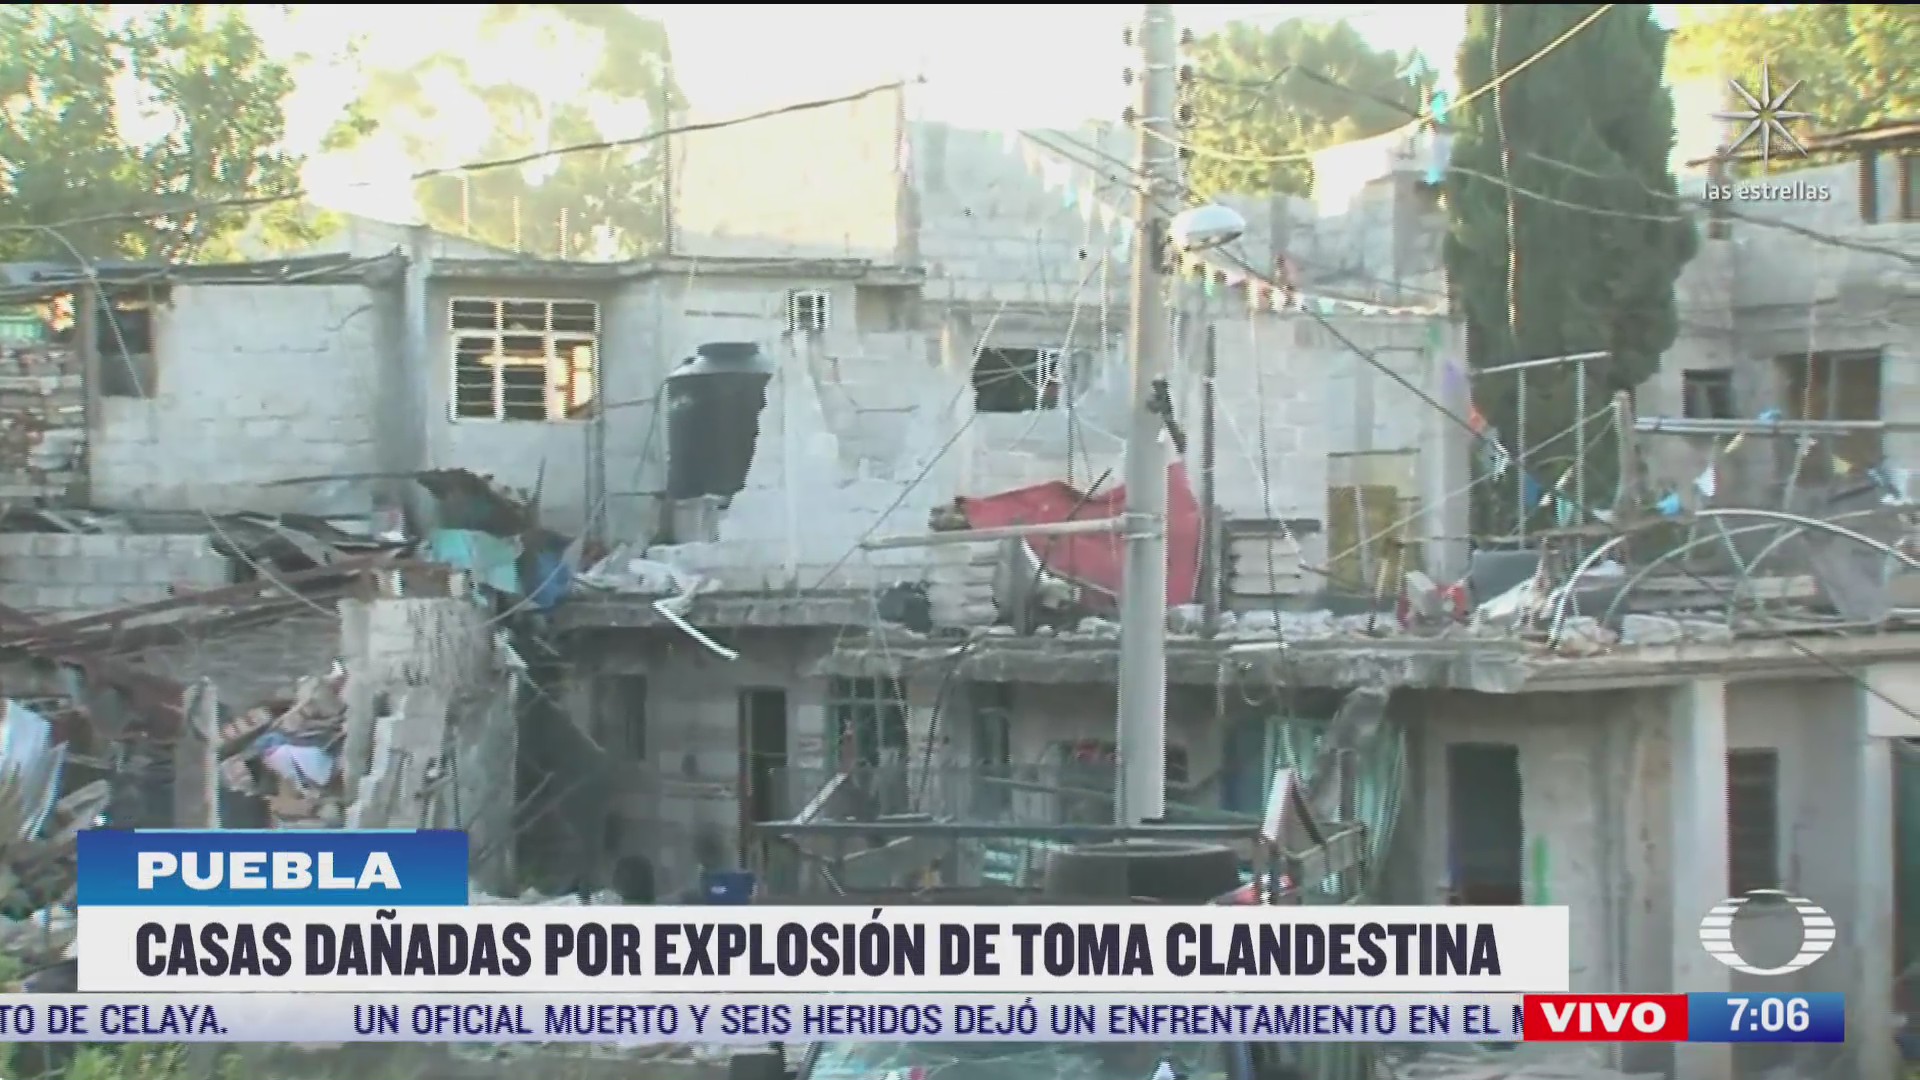 viviendas danadas por explosiones en puebla tienen danos estructurales